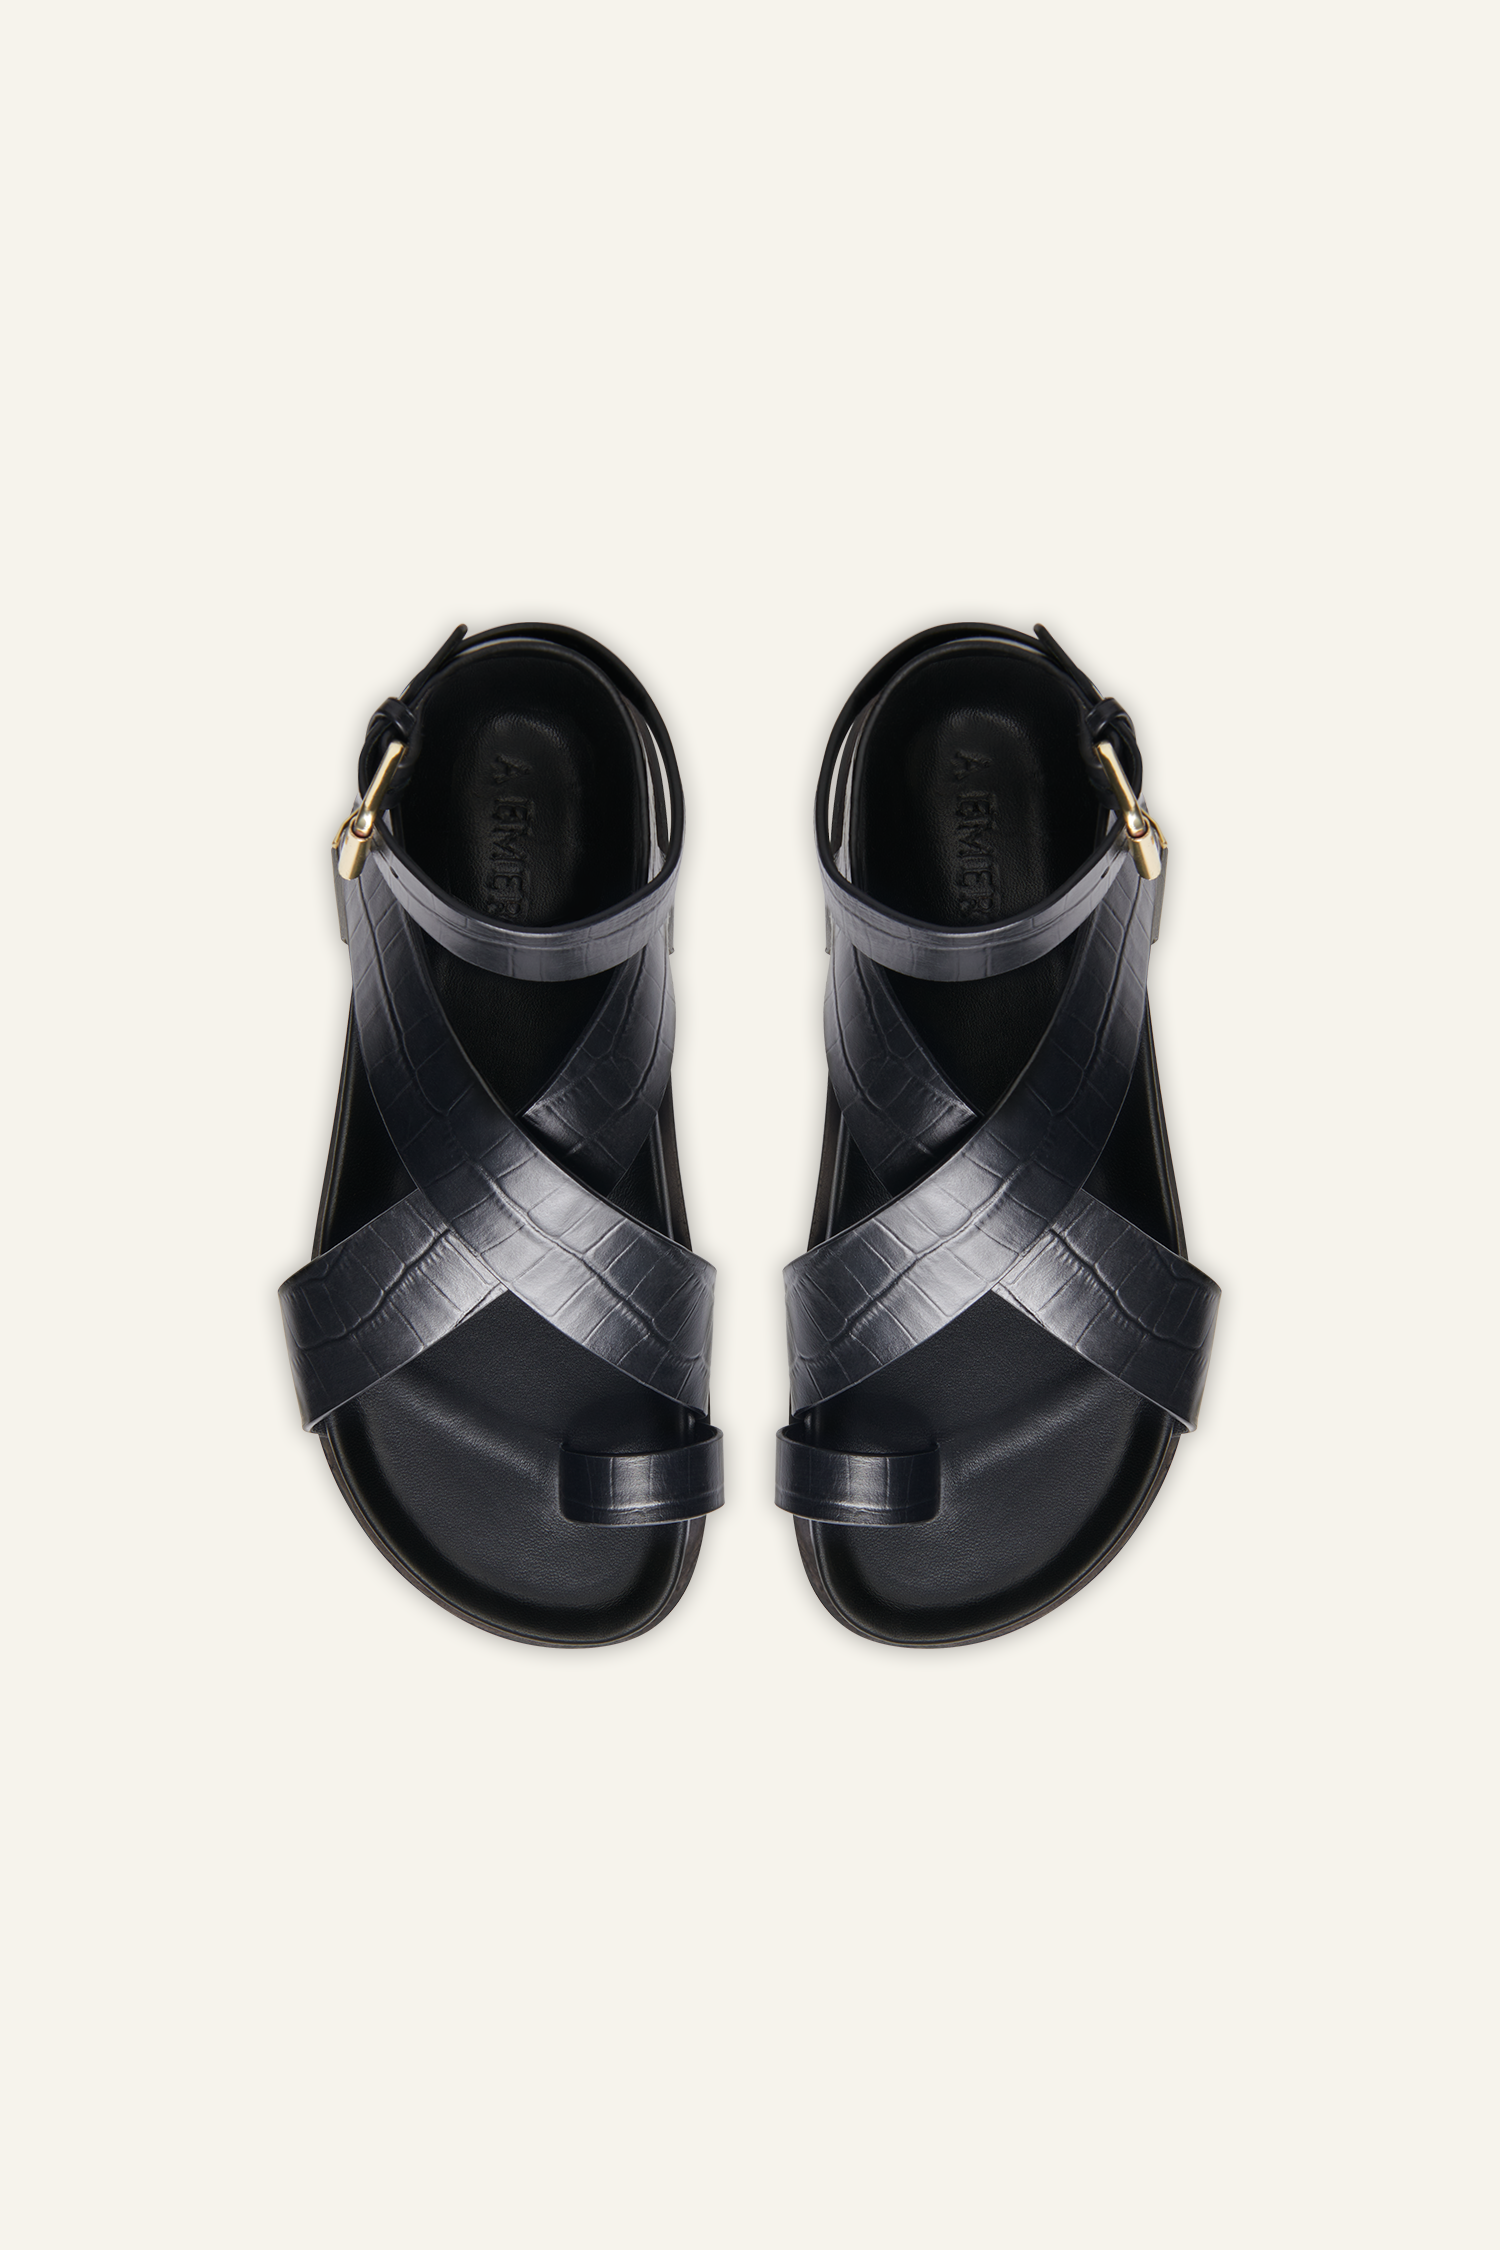 Symmetrical Strap Croc Print Heels – Fairdeal Shoes